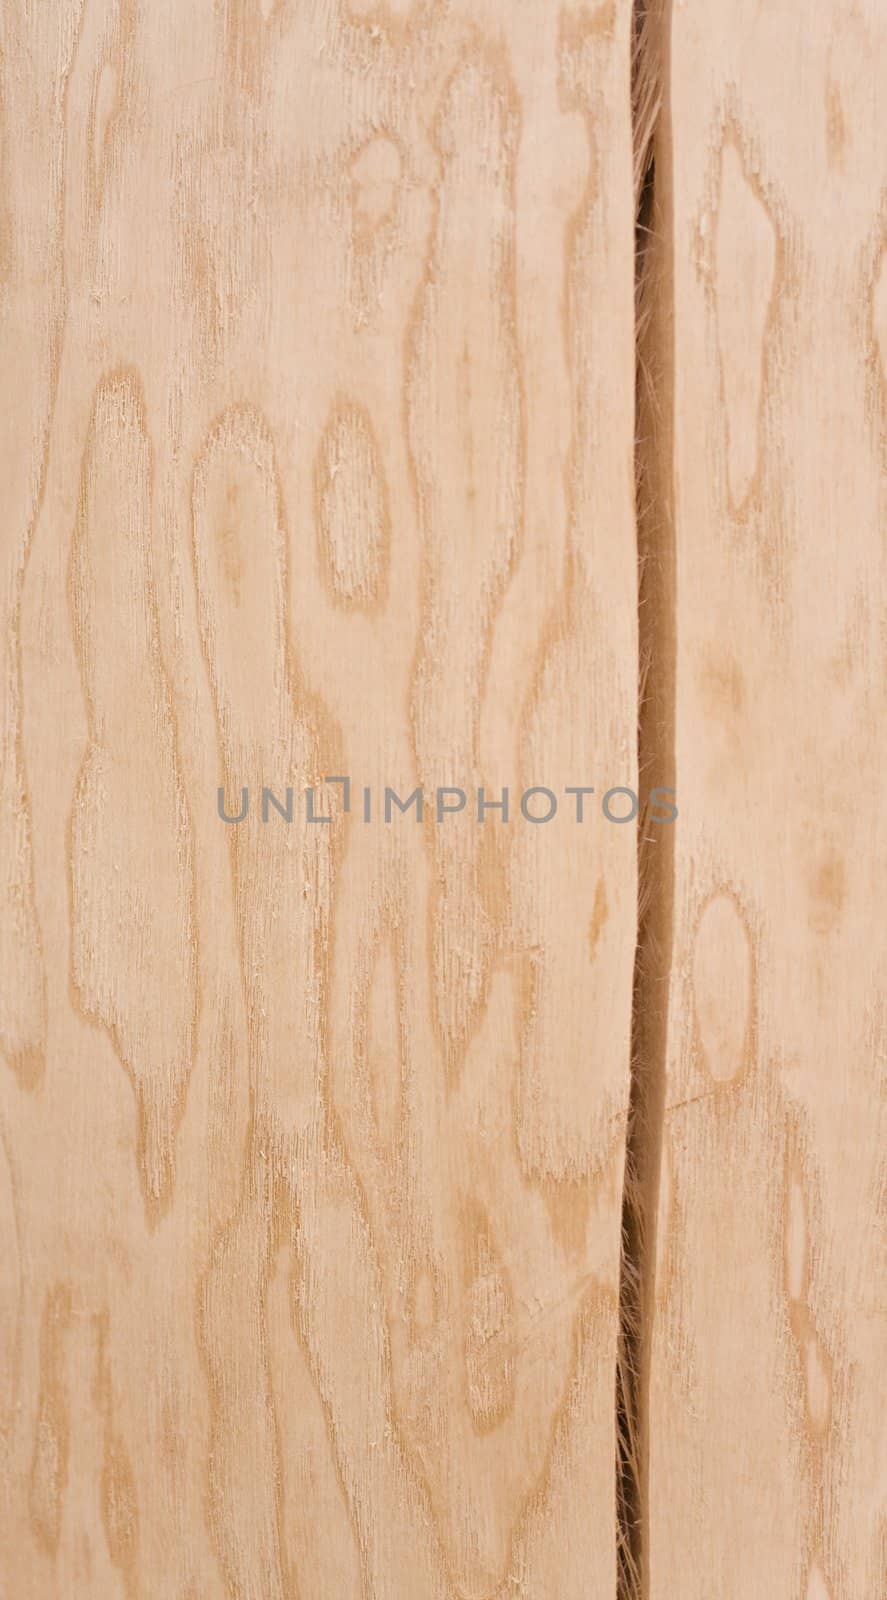 light wooden texture. fresh cut wood.